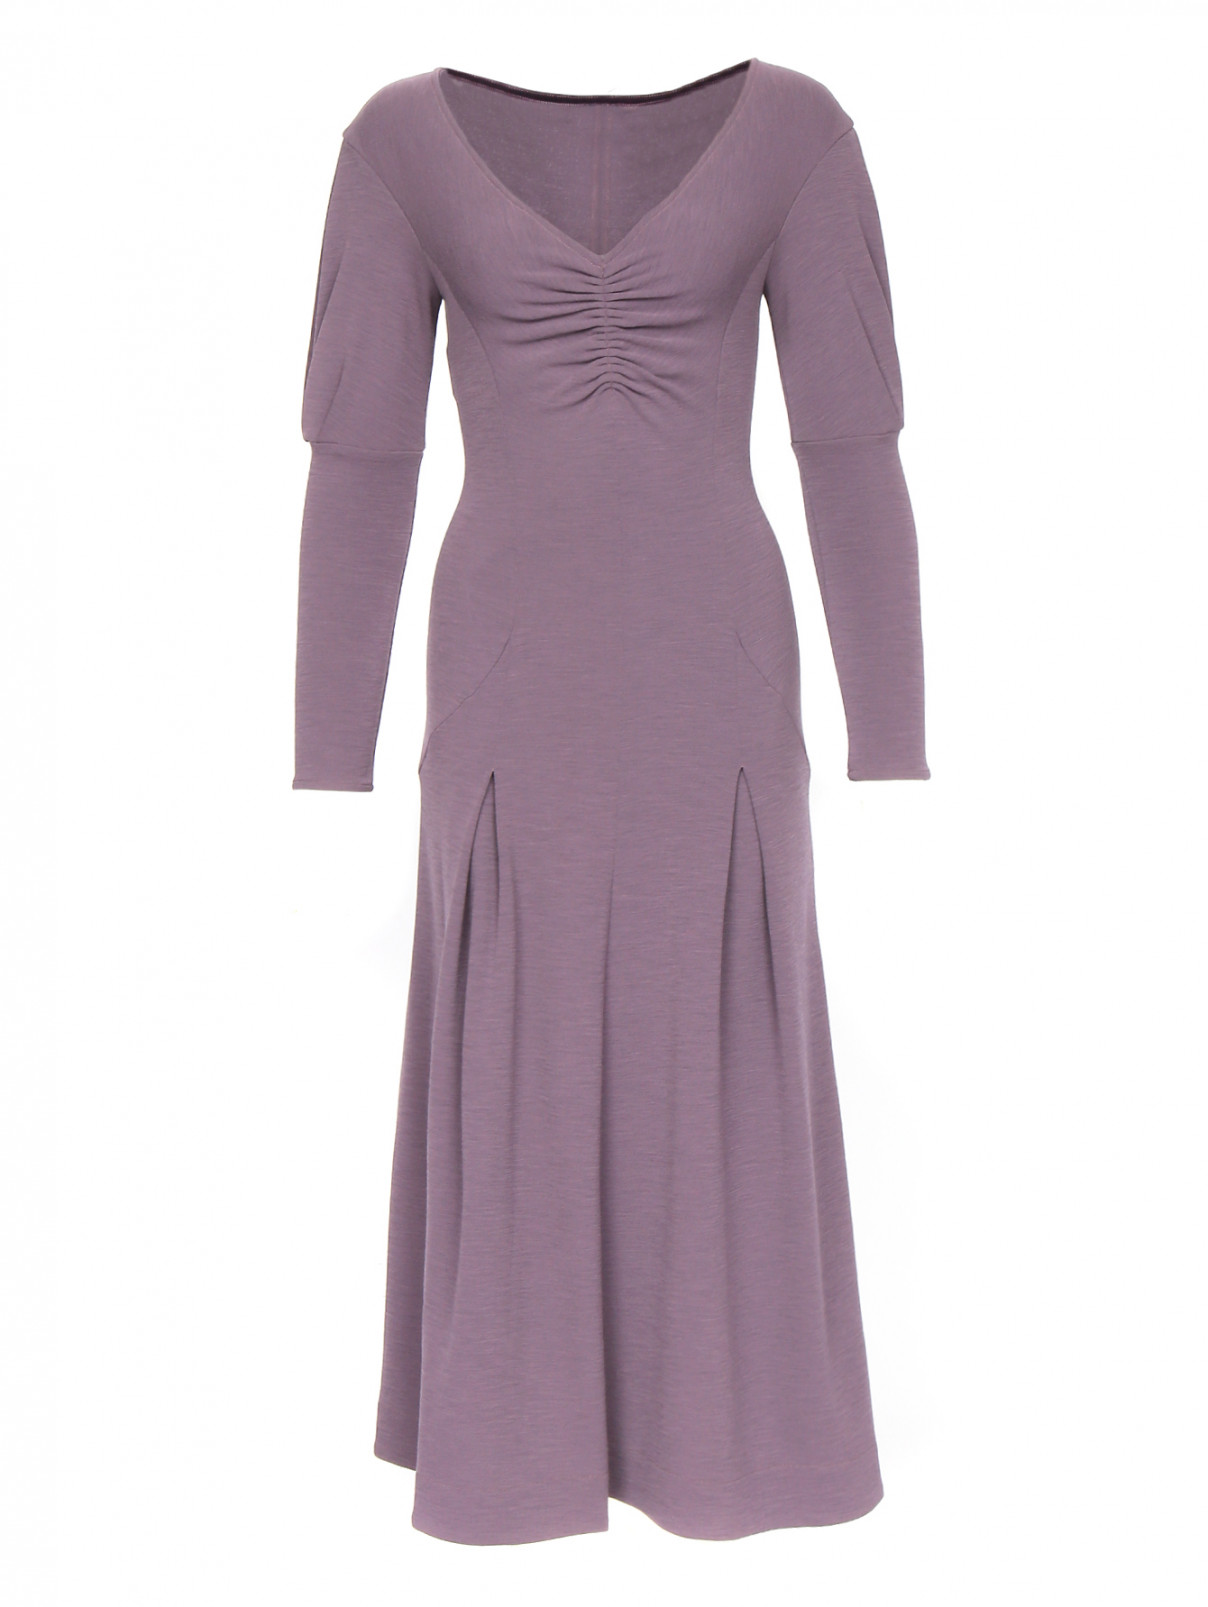 Платье-макси с длинным рукавом из шерсти Mariella Burani  –  Общий вид  – Цвет:  Фиолетовый